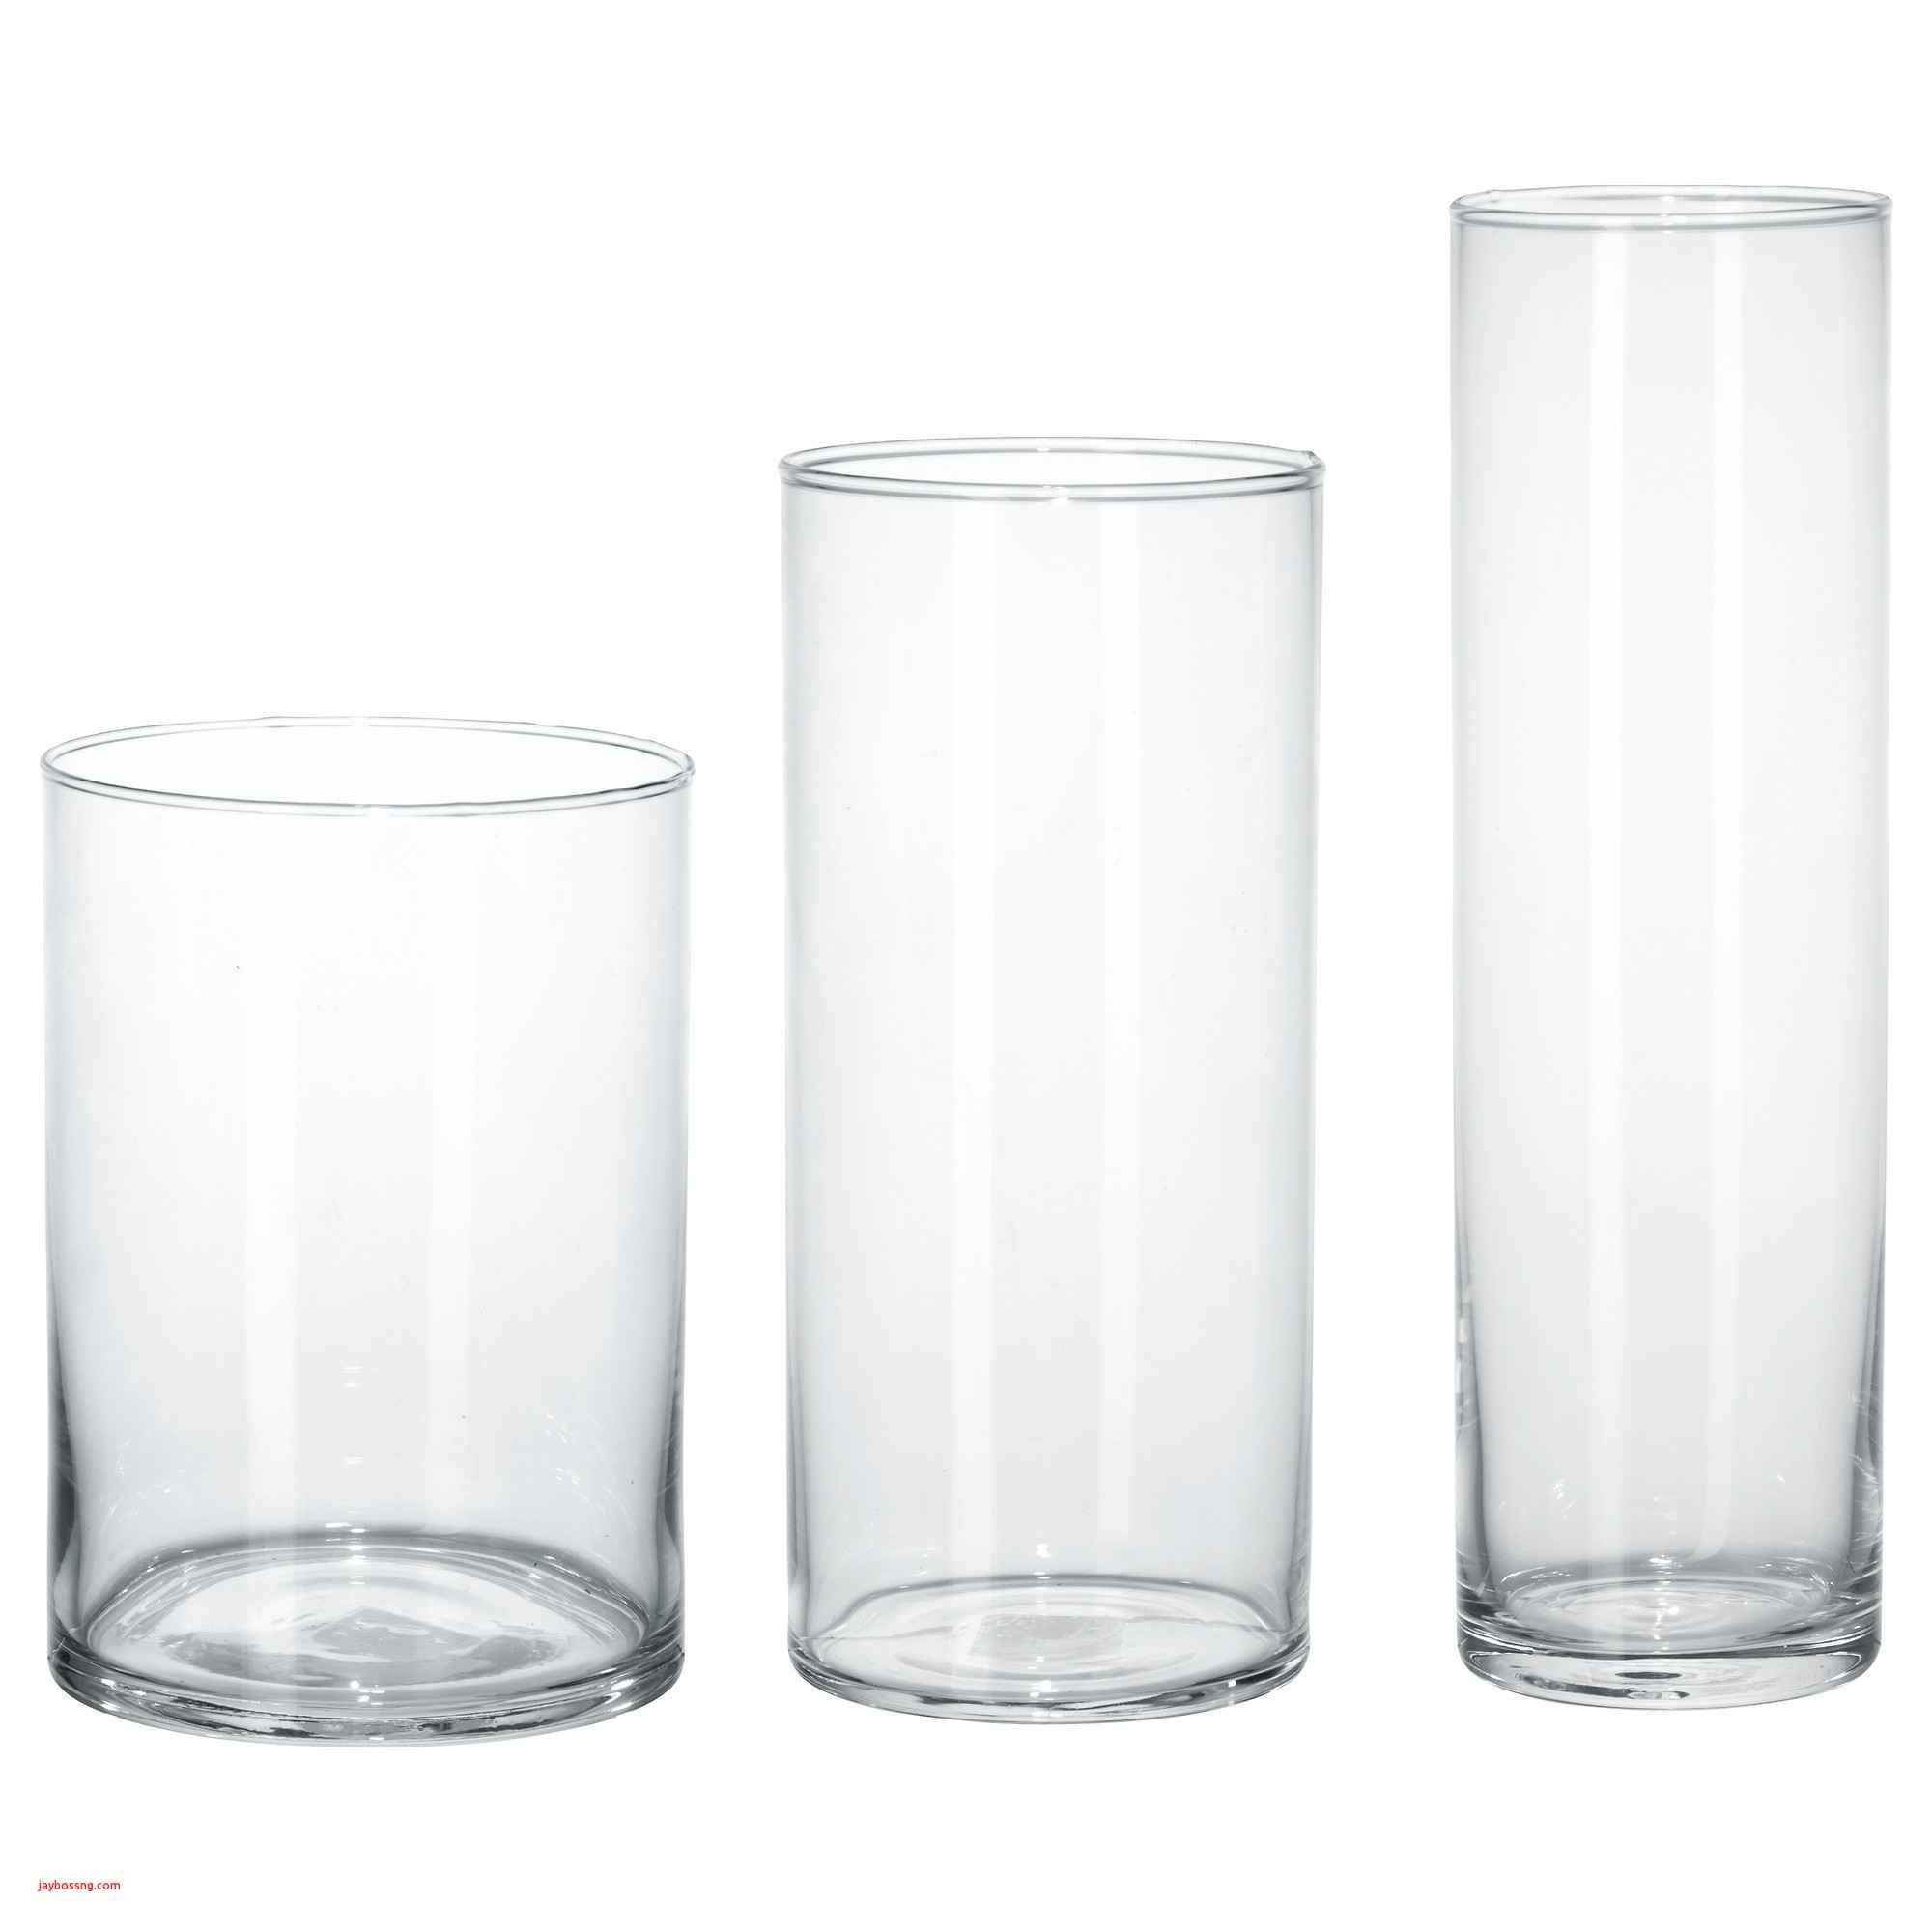 Favrile Glass Vase Of Brown Glass Vase Fresh Ikea White Table Created Pe S5h Vases Ikea Inside Brown Glass Vase Fresh Ikea White Table Created Pe S5h Vases Ikea Vase I 0d Bladet